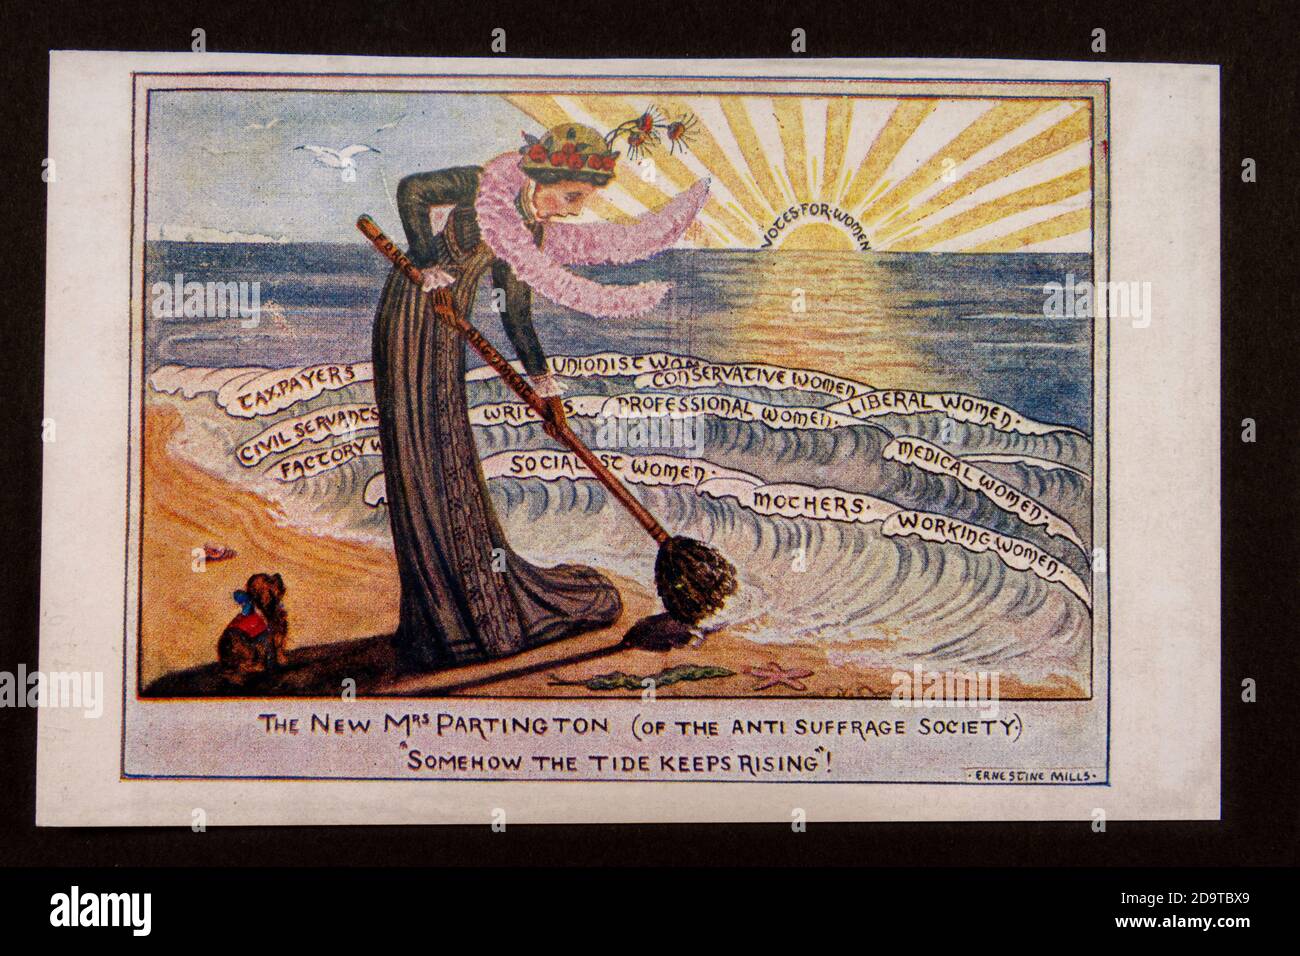 'Somehow the Tide Keeps Rising' Anti Suffrage Society Poster, Nachbildung von Erinnerungsstücken zur Suffragette-Bewegung in Großbritannien. Stockfoto